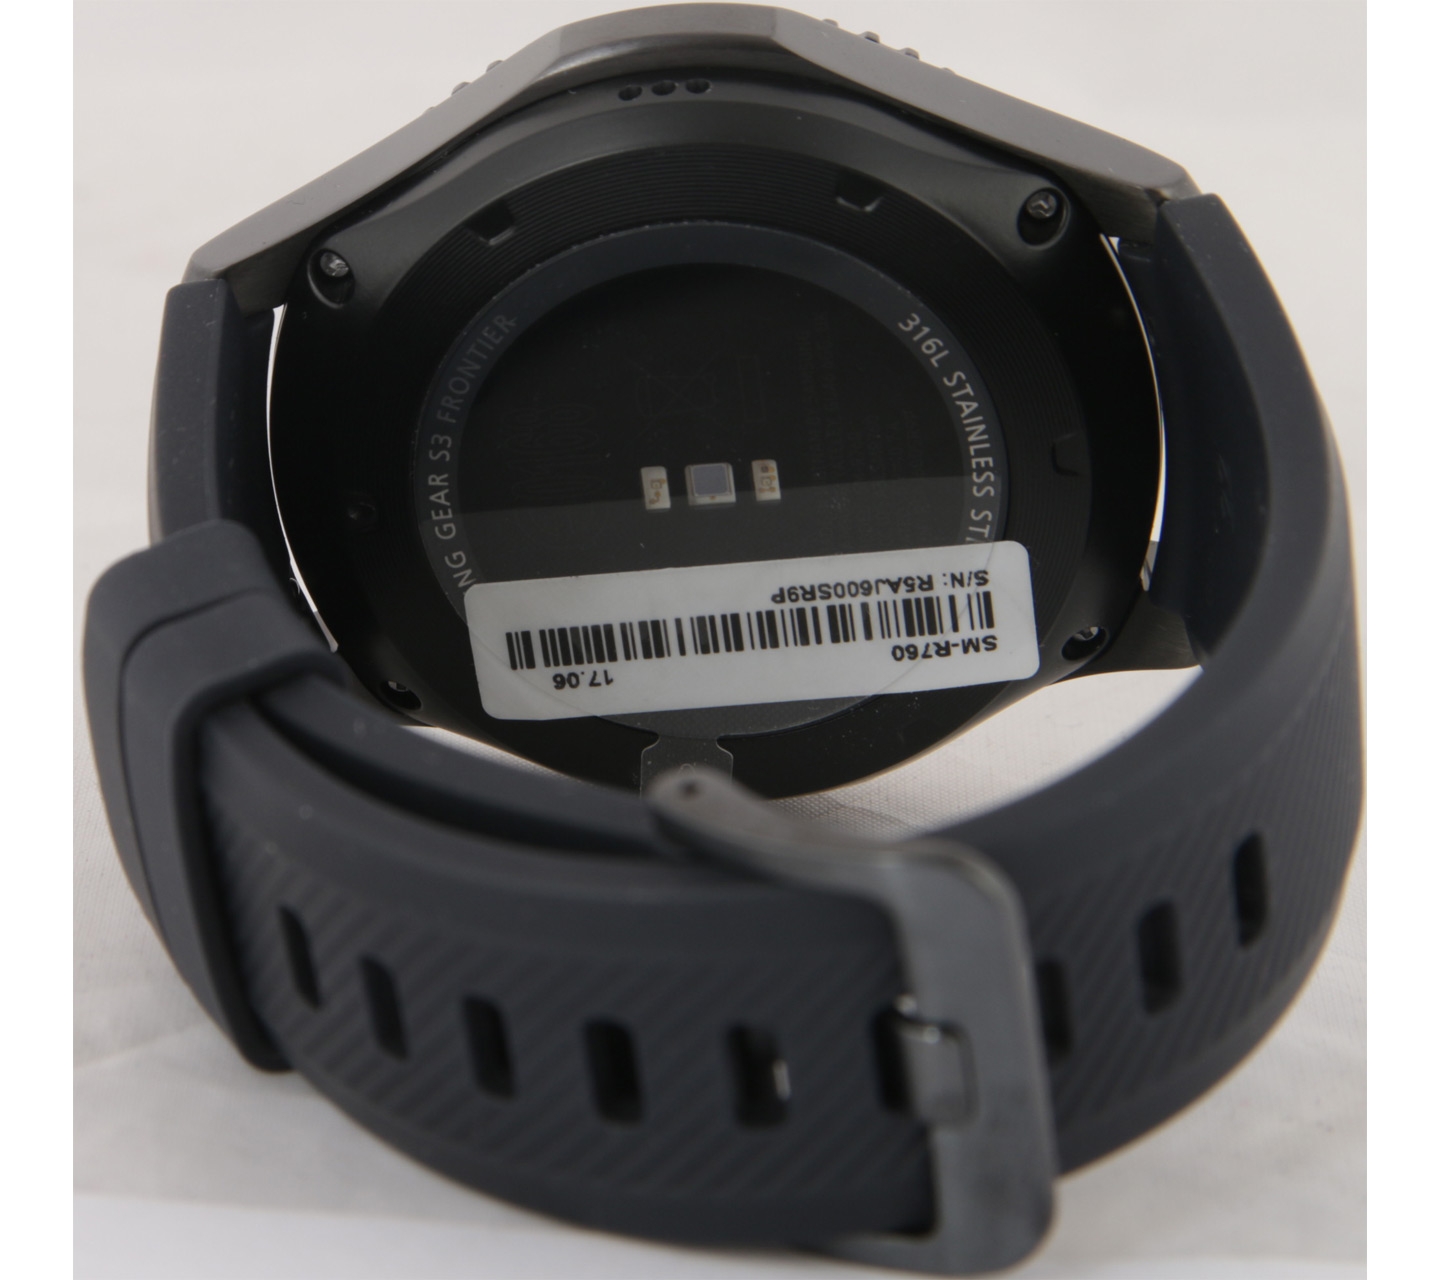 Samsung Black Gear S3 Frontier Watch